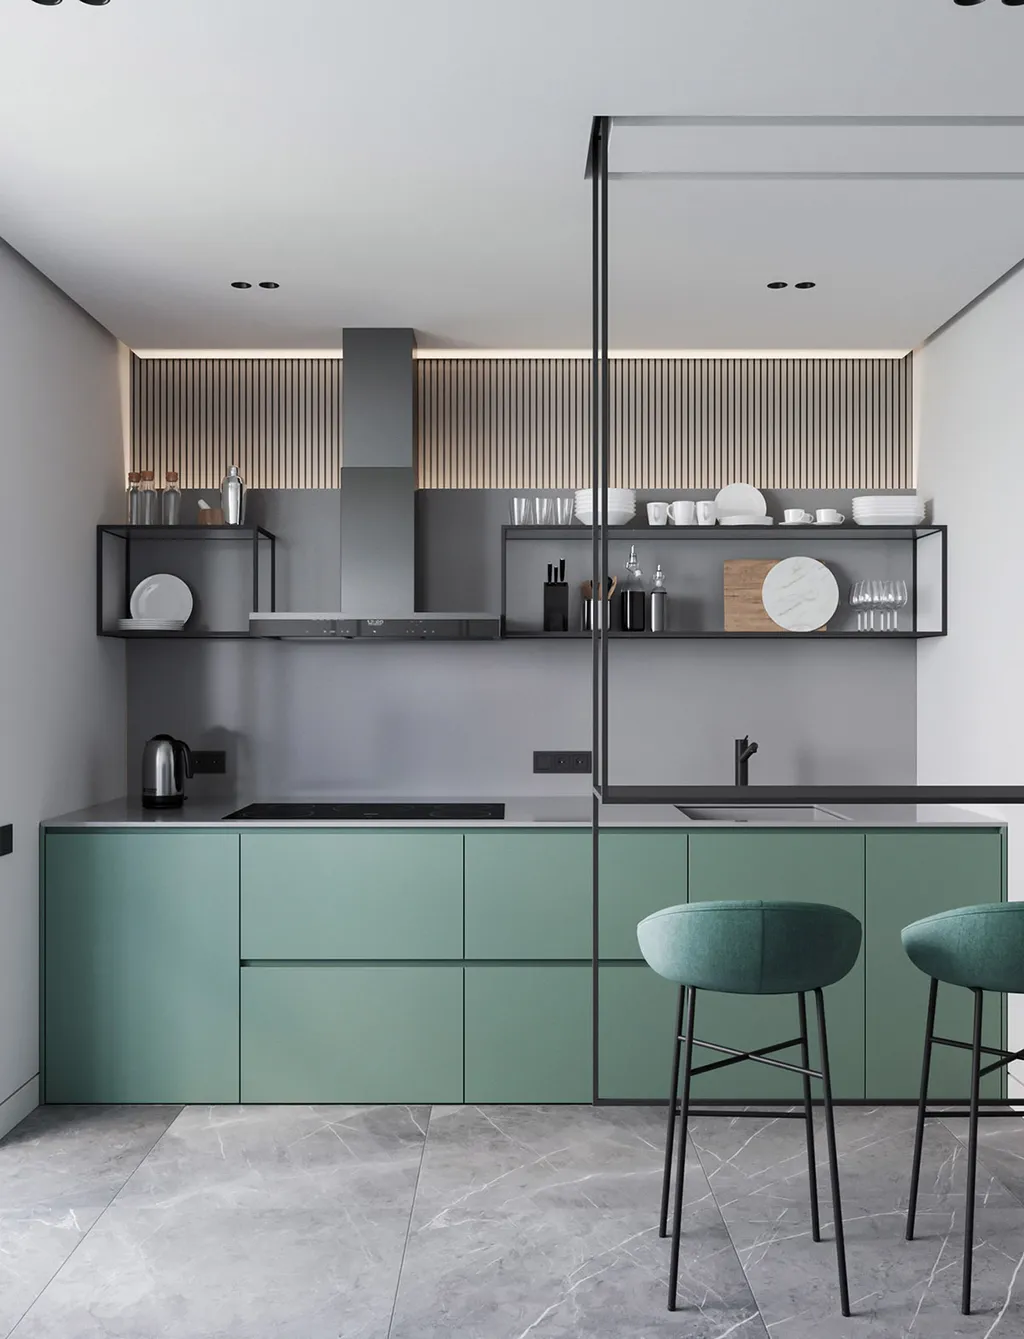 Nhà bếp căn hộ 70m2 thiết kế theo phong cách Minimalist